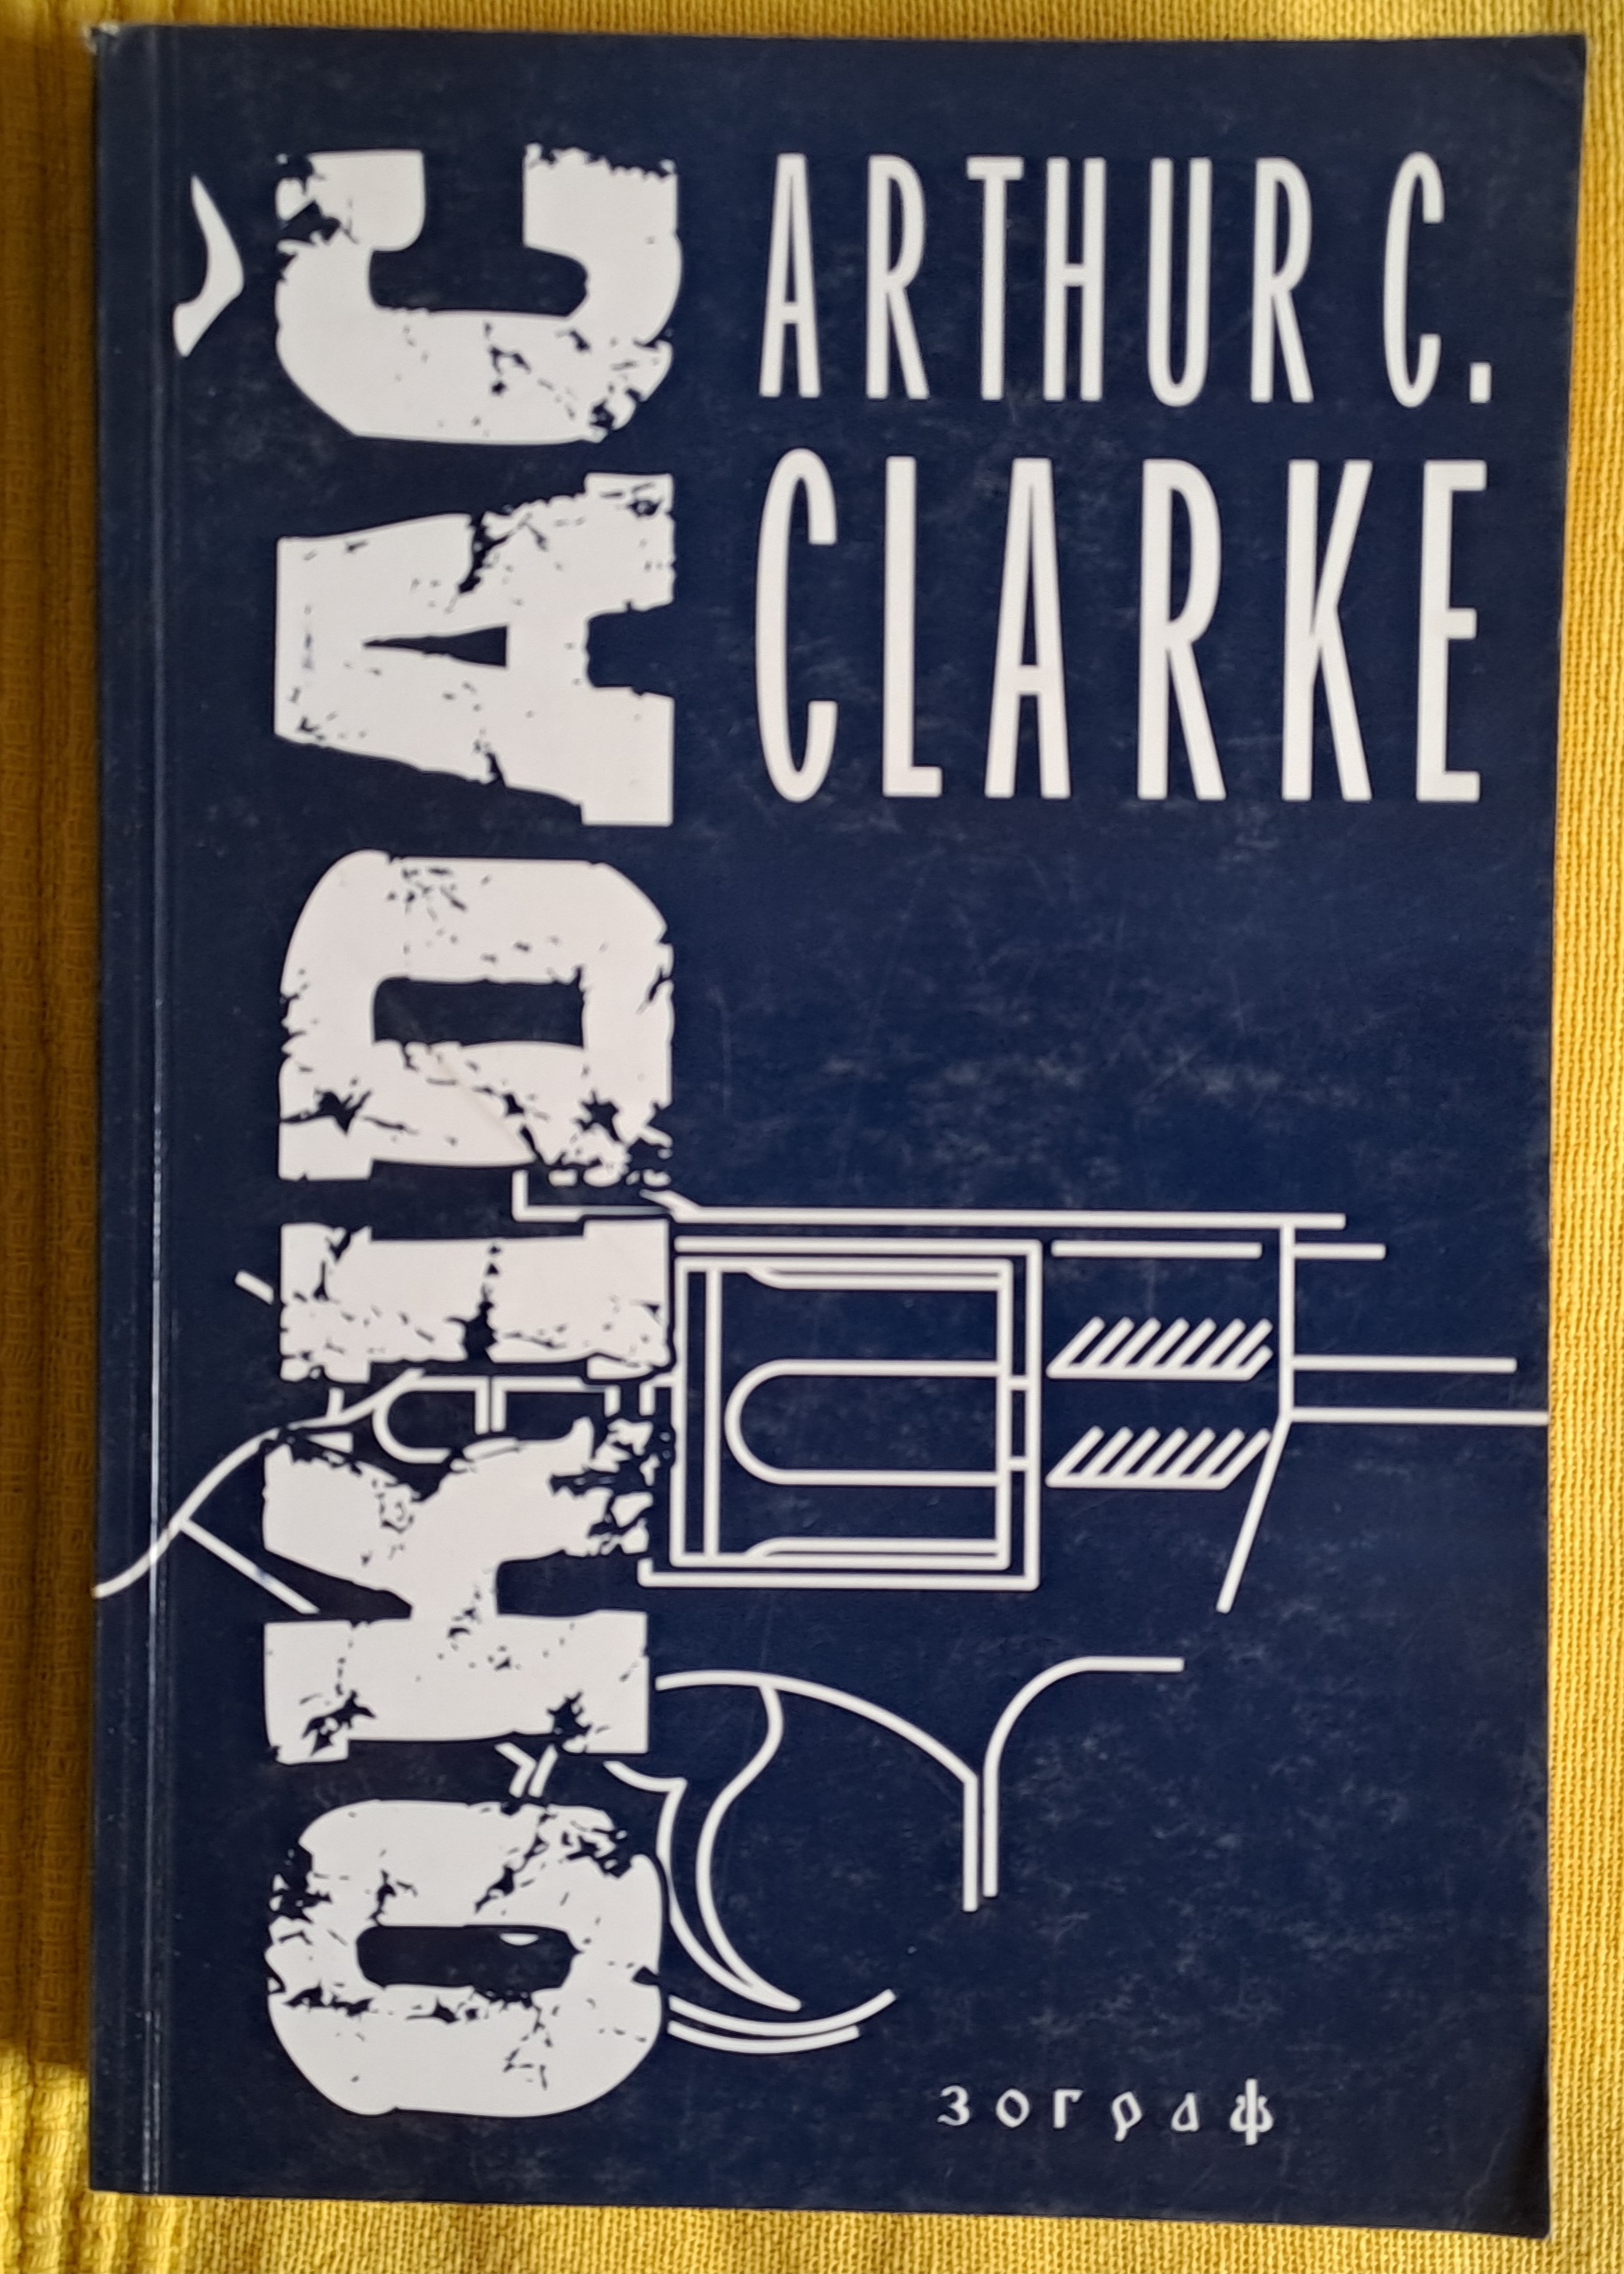 Okidač  Artur Klark  ( Arthur Clarke)